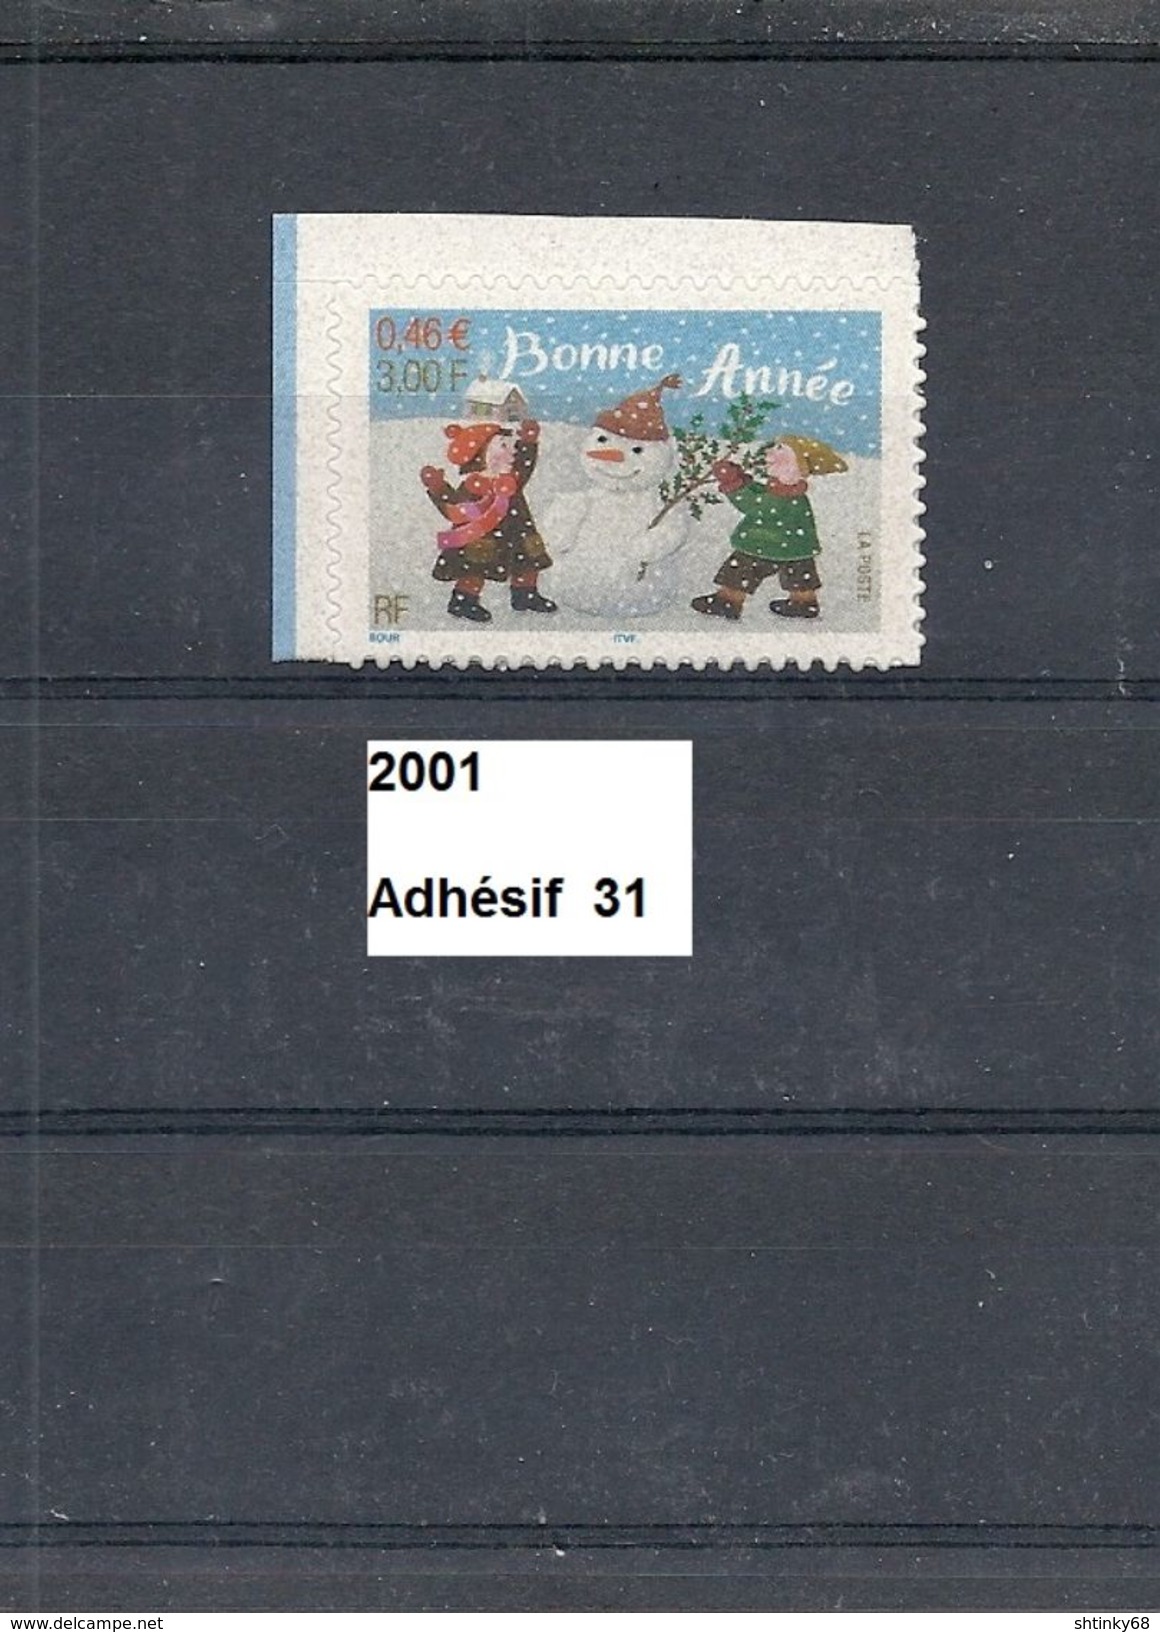 Adhésif De 2001 Neuf**  Y&T  N° Adh 31 (3437) - Unused Stamps